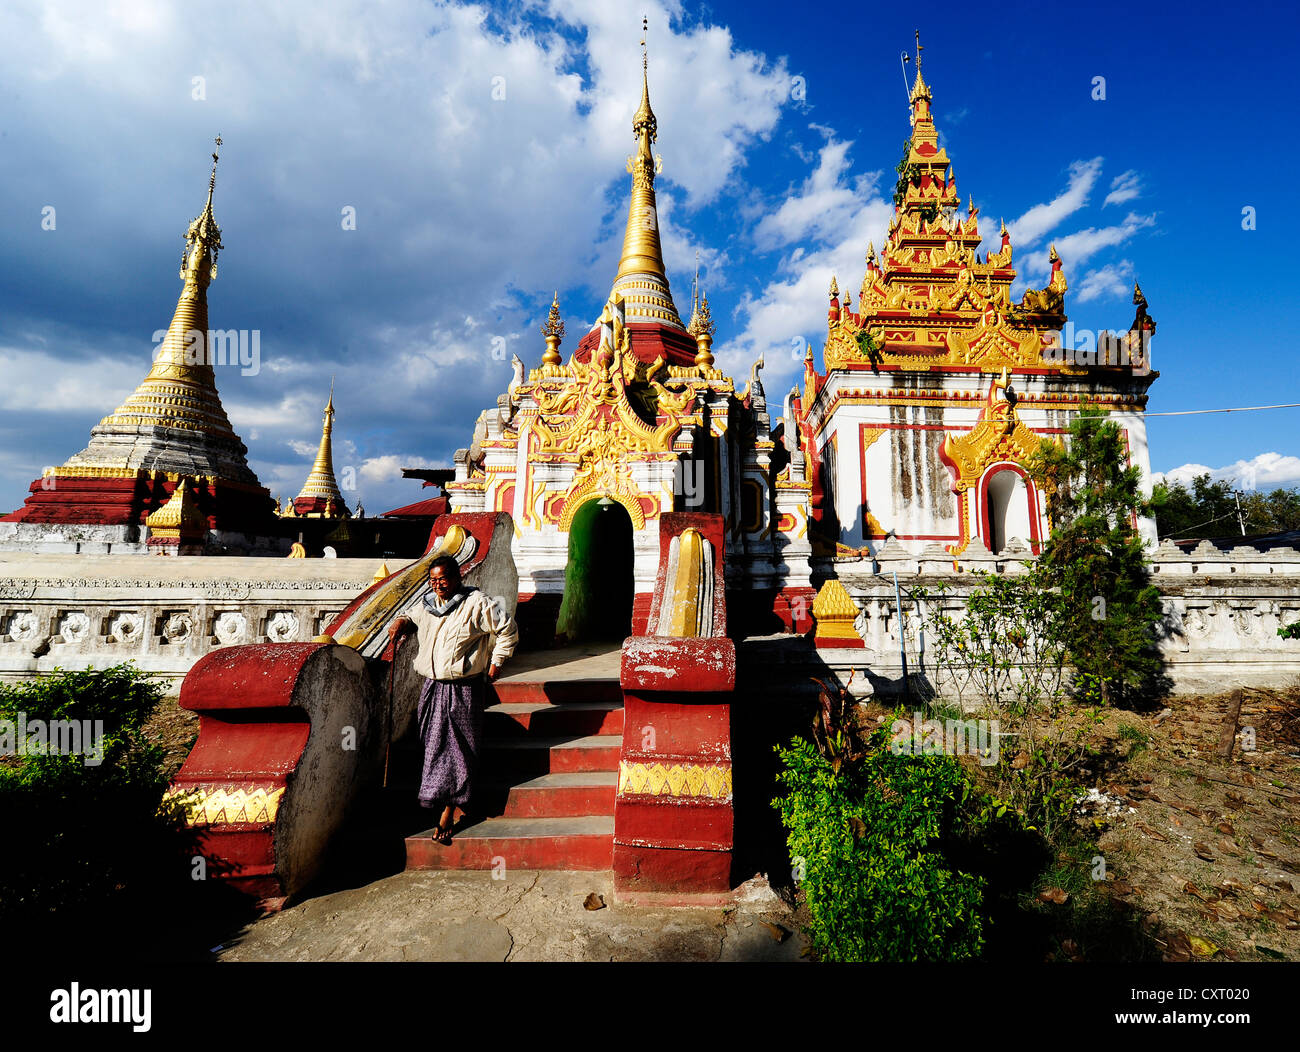 Tempel, Pagoden, Nyaungshwe am Inle See, Birma auch bekannt als Myanmar, Südostasien, Asien Stockfoto